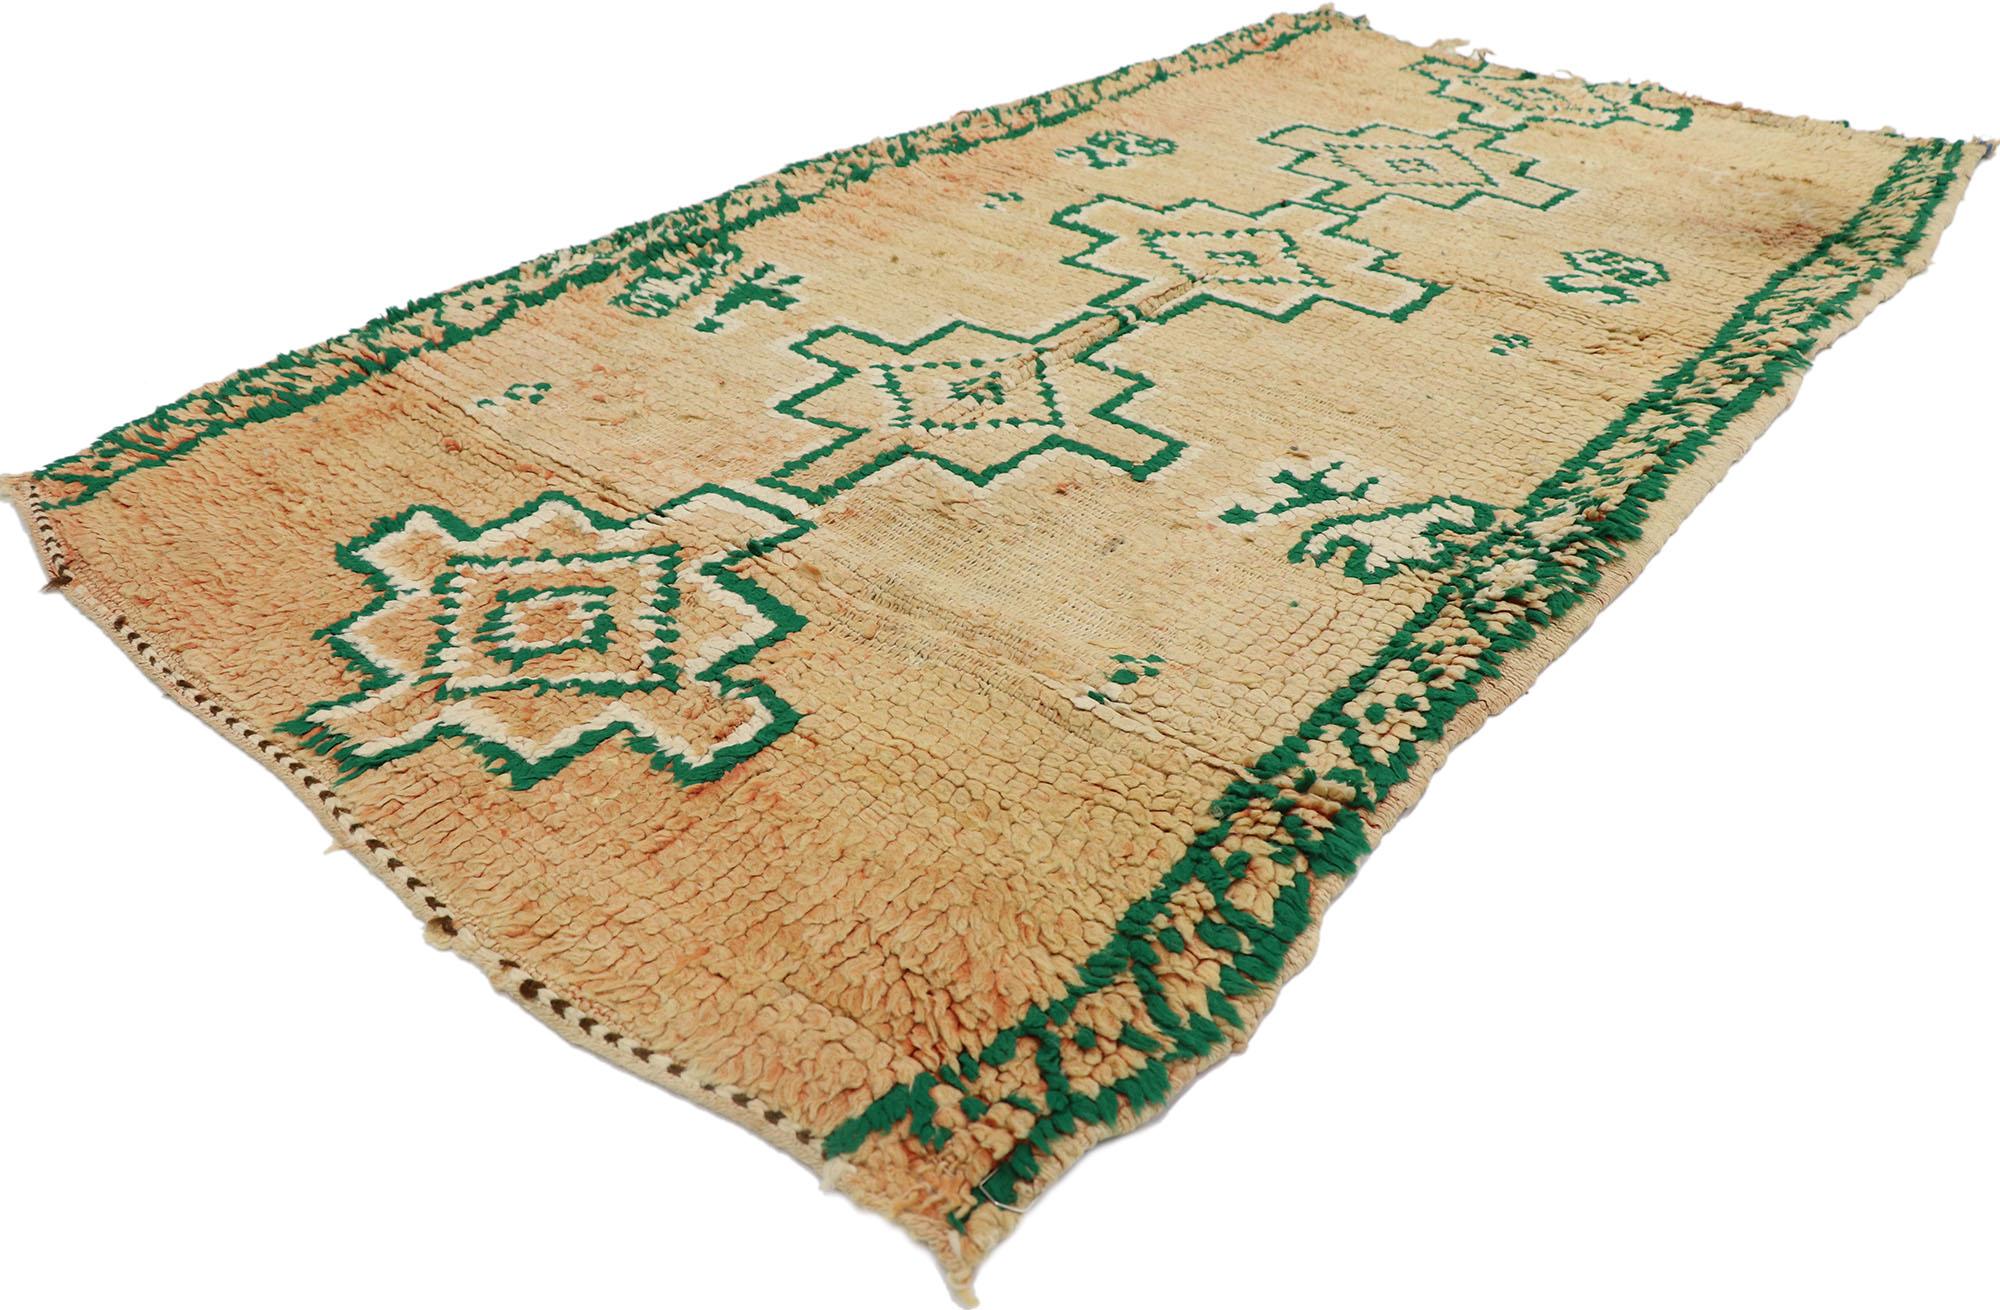 21568 Vintage Berber Marokko Teppich mit Boho Chic Tribal Stil 03'02 x 05'08. Dieser handgeknüpfte marokkanische Berberteppich aus Wolle besticht durch seine Schlichtheit, seine unglaublichen Details und seine Textur. Das abgeschliffene rostfarbene